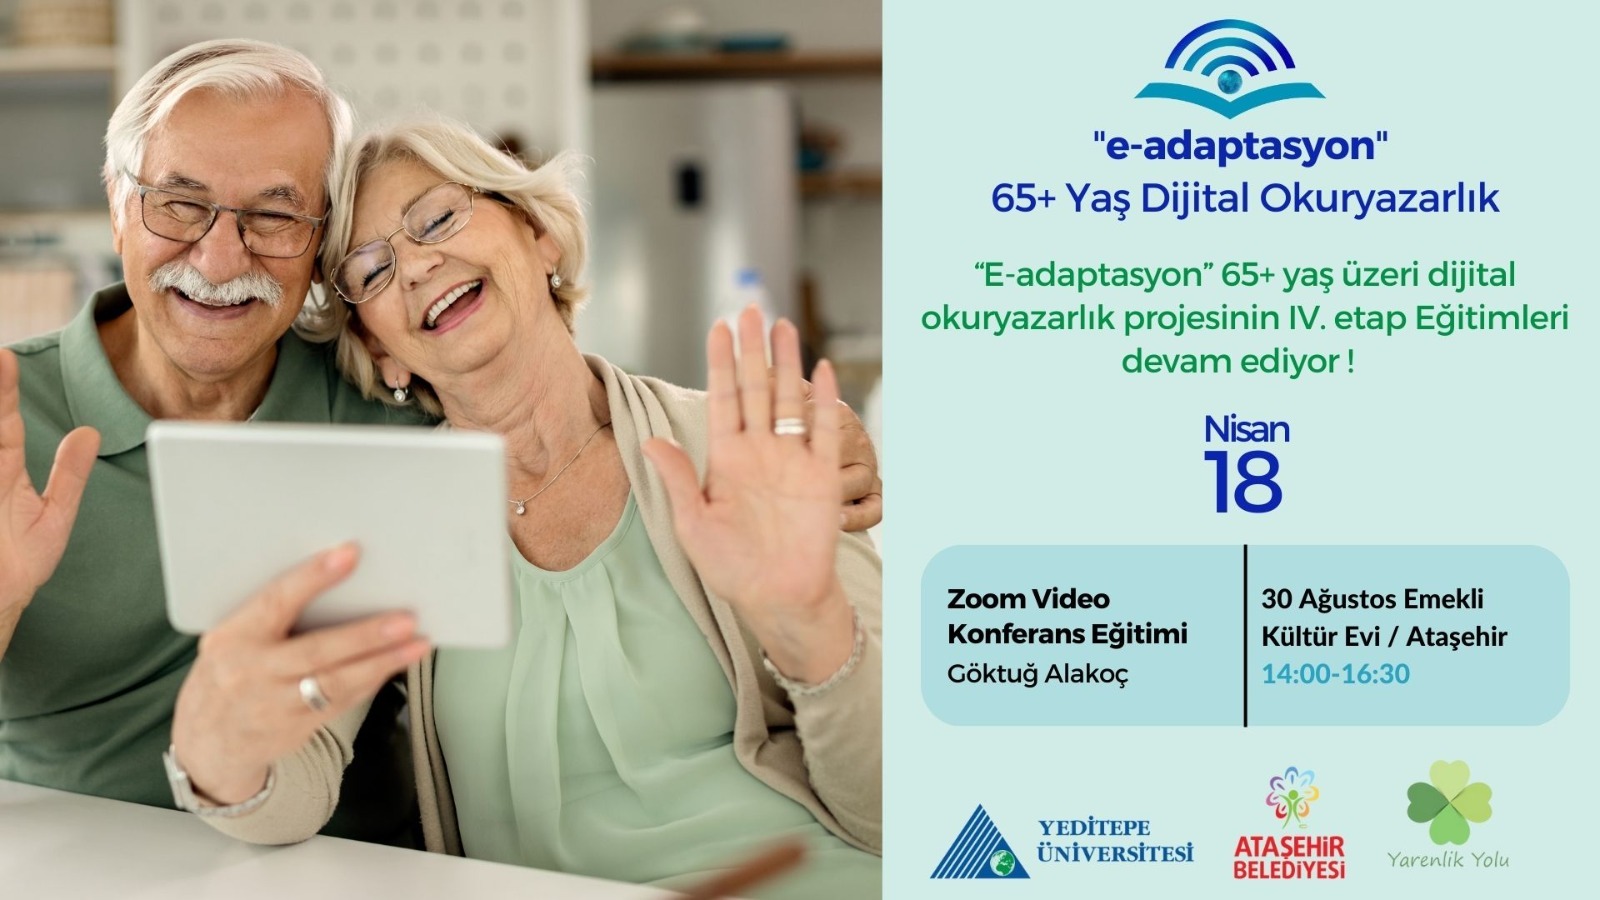 “65+yaş Dijital Adaptasyon” 4.Etap 4. Hafta eğitimi ile devam ediyor!